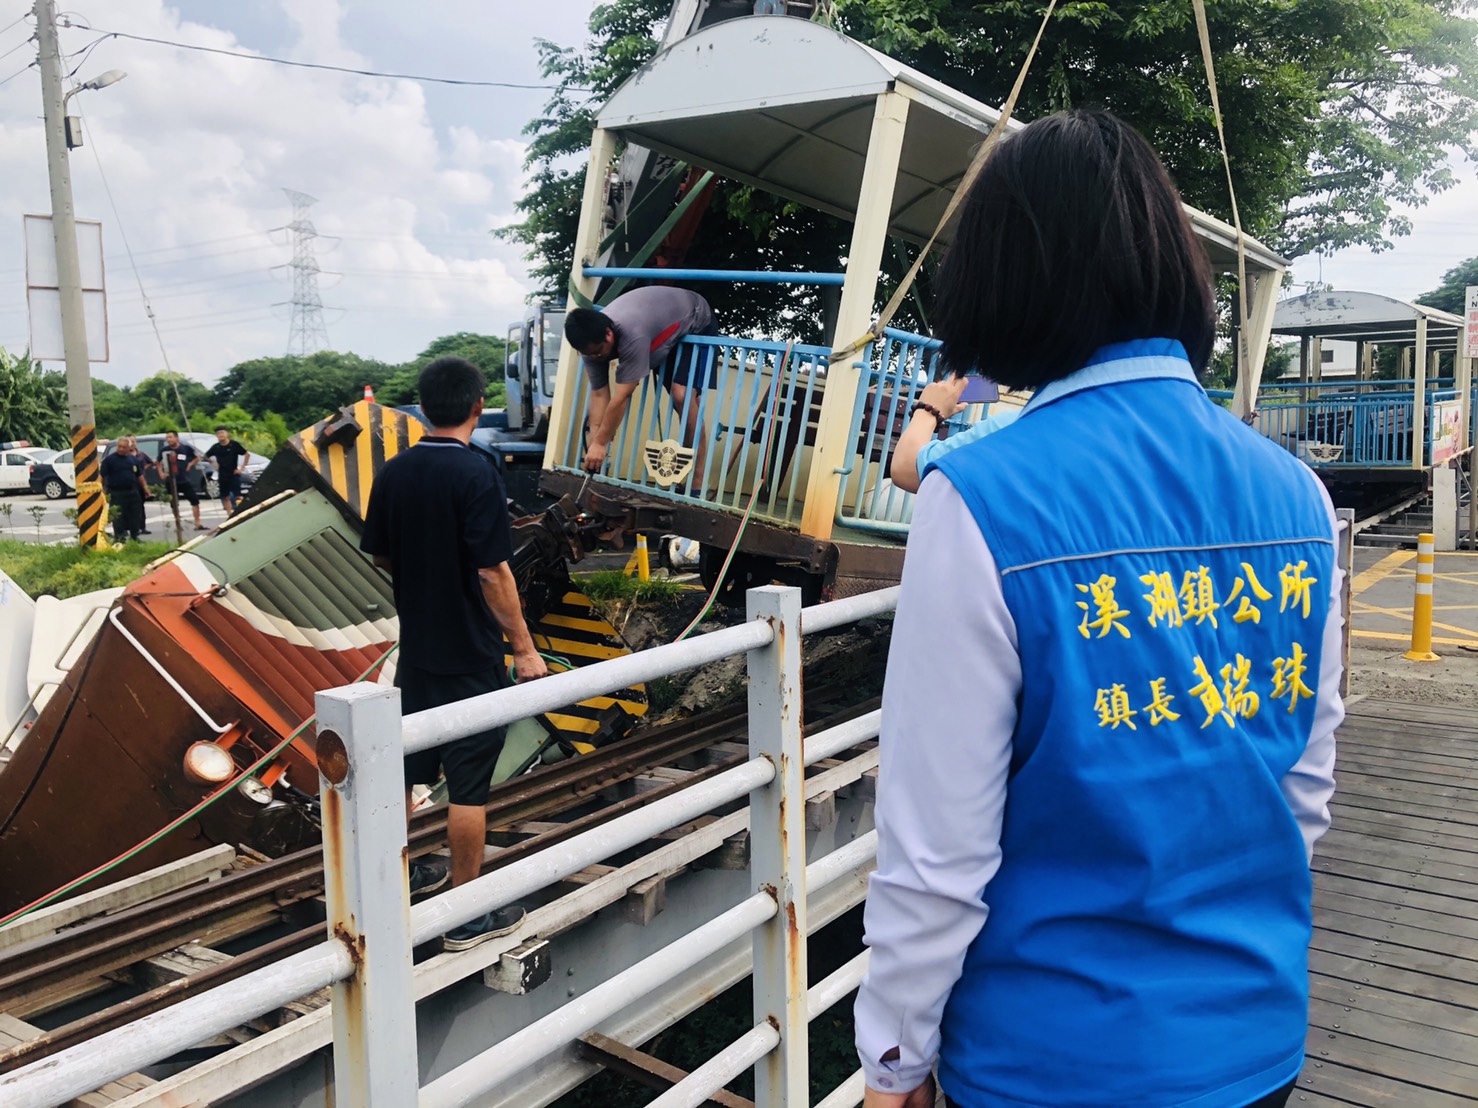 6月份鎮政活動剪影1090626溪湖糖廠火車翻覆意外黃鎮長瑞珠第一時間到達現場瞭解狀況及協助